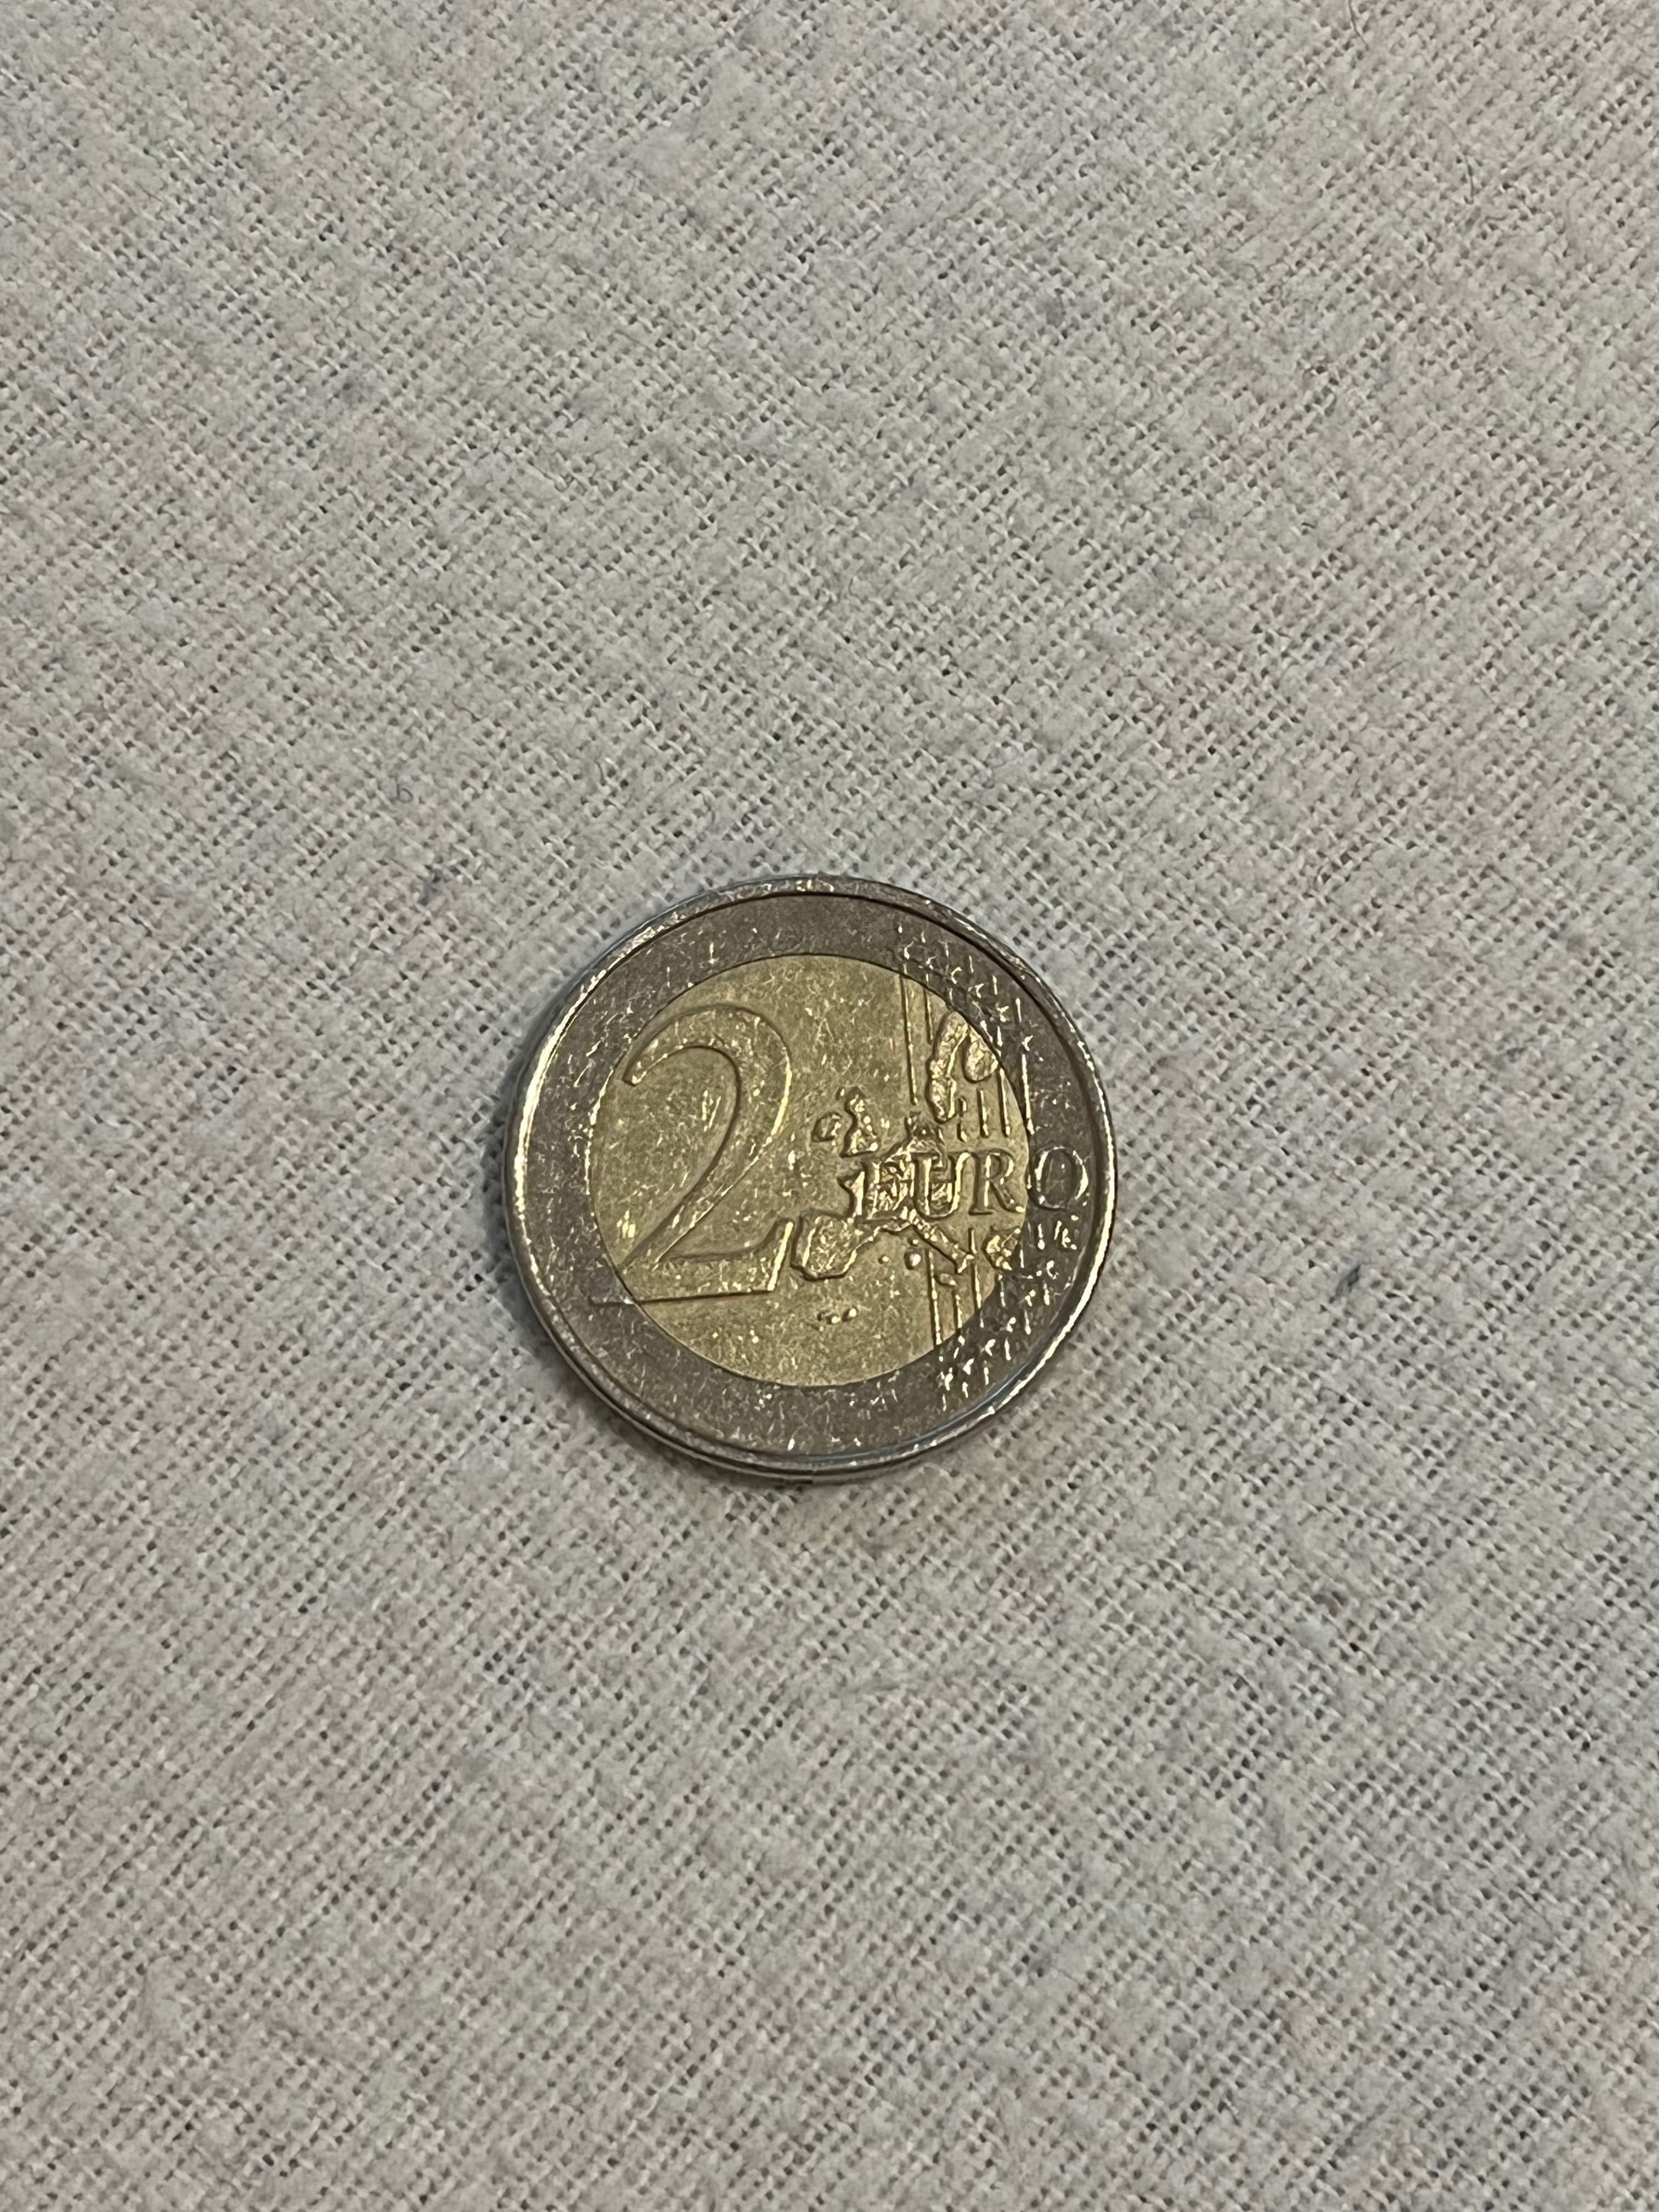 Moeda 2 euros da Grécia RARA com letra S